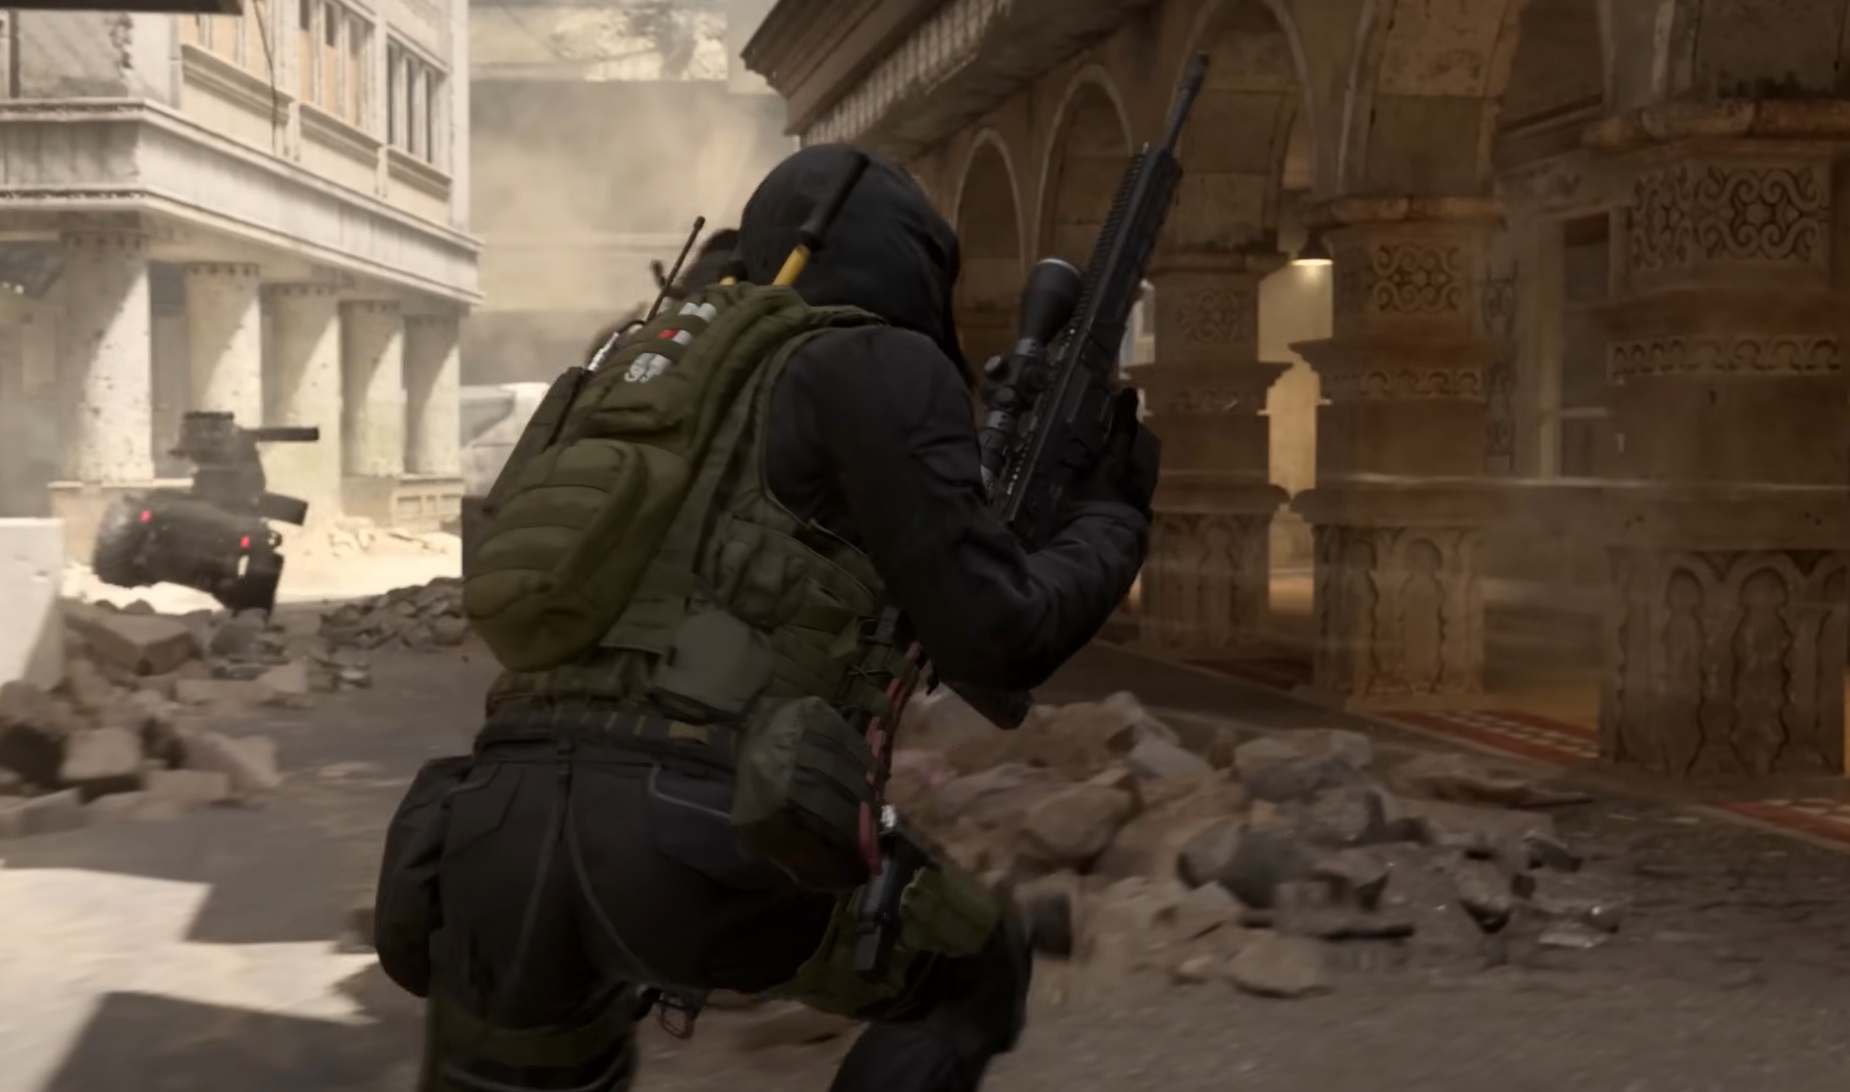 Lỗi kỹ thuật khiến phụ kiện ống ngắm dưới nòng trong Call of Duty bị vô hiệu hóa